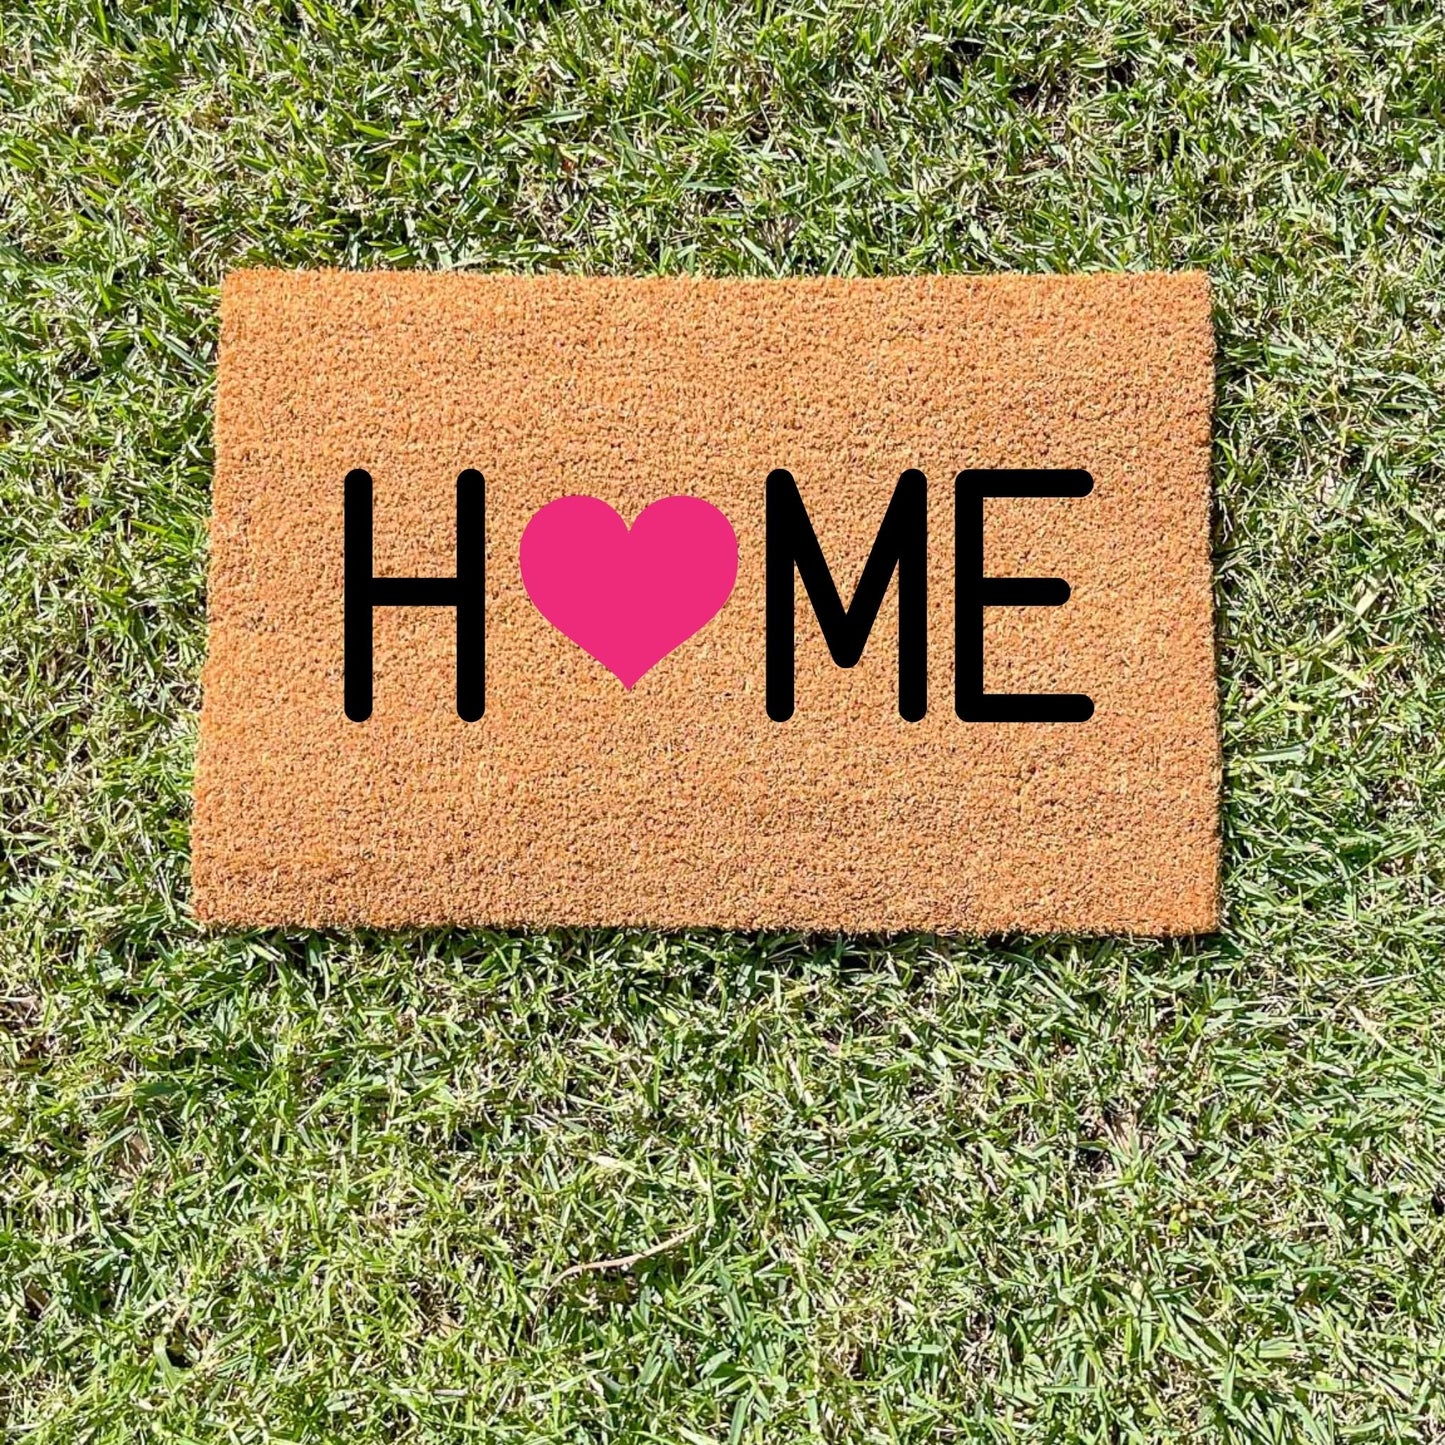 Home heart doormat, cutesy doormat, custom doormat, personalised doormat